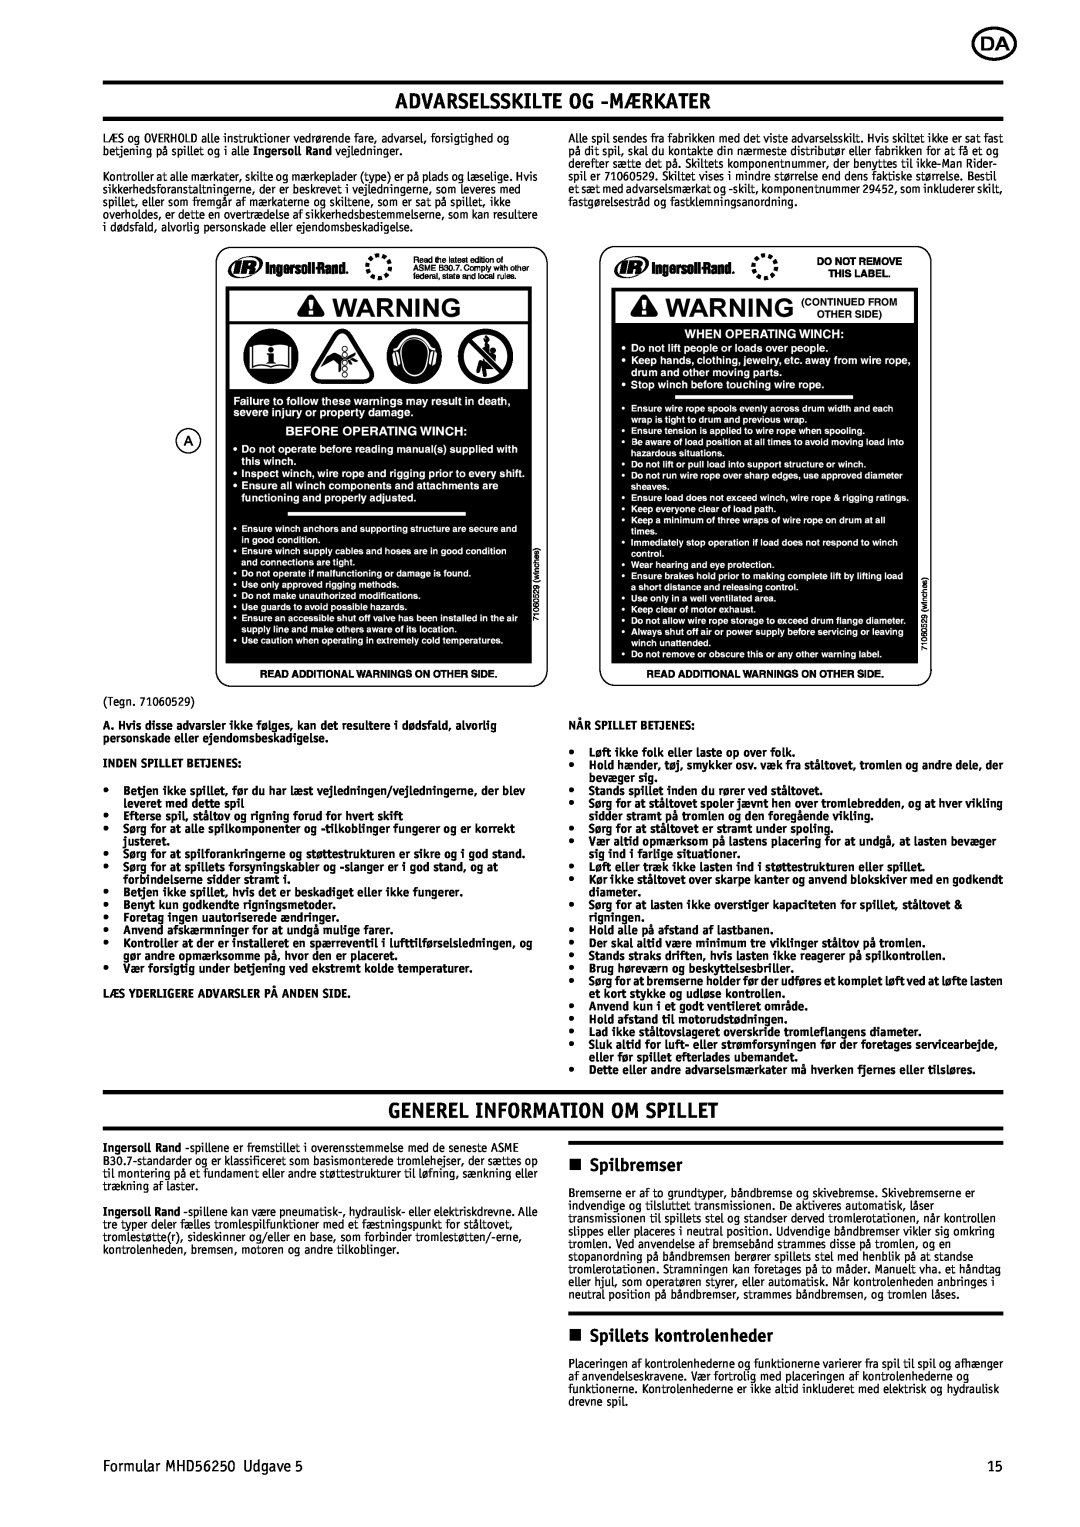 Ingersoll-Rand MHD56250 manual Advarselsskilte Og -Mærkater, Generel Information Om Spillet, n Spilbremser 